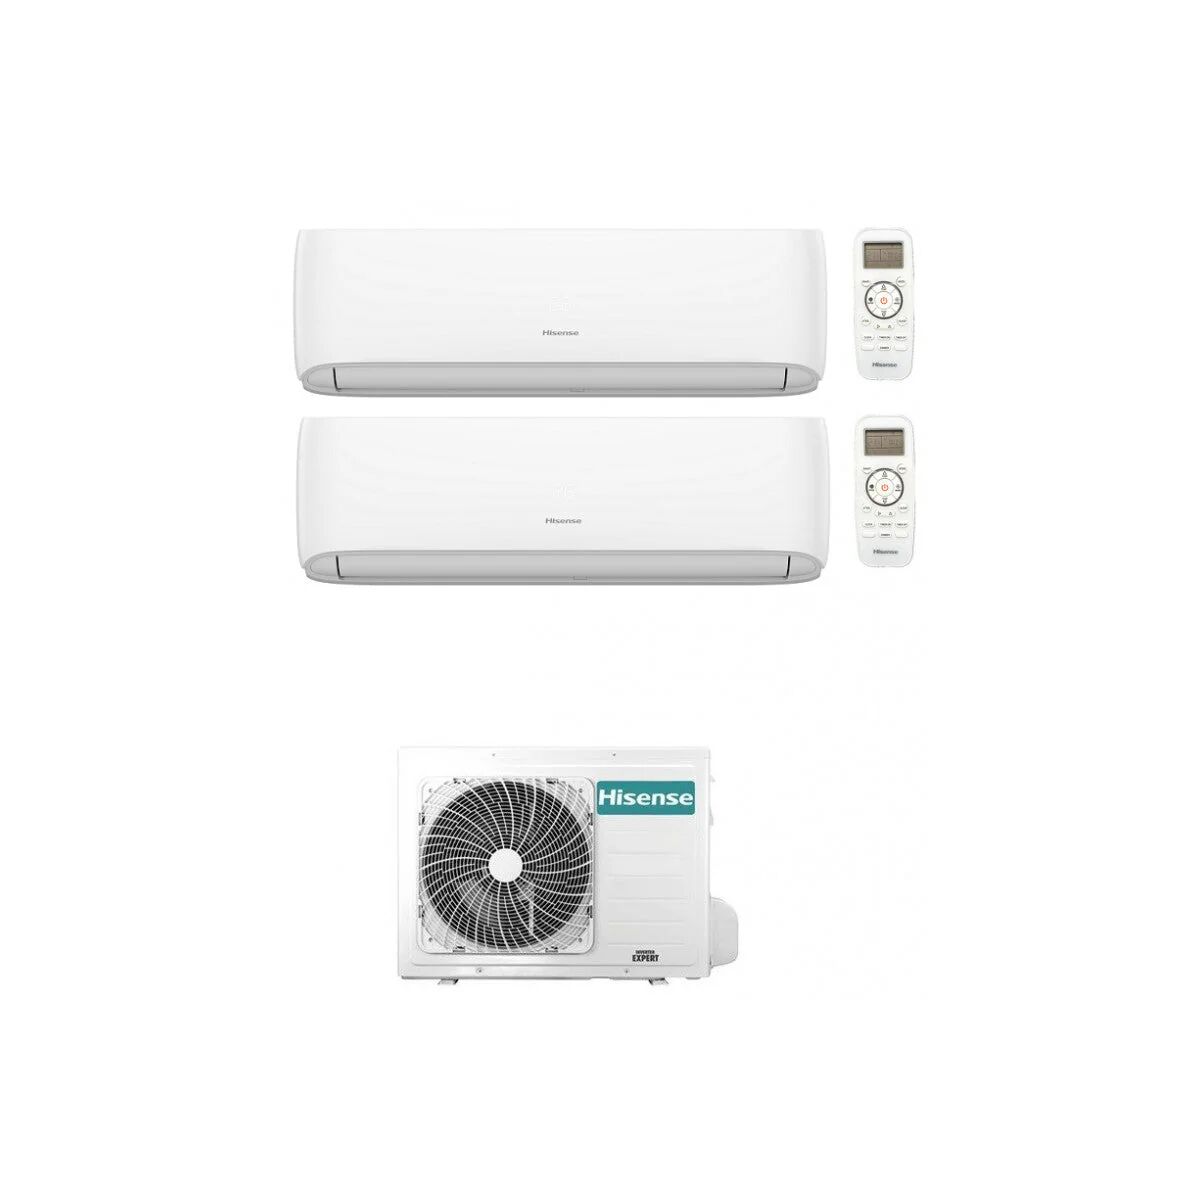 Condizionatore Hisense Hi-Comfort Dual Split 7000+9000 Btu Inverter R32 2Amw52U4Rxc A++/A+ Wifi